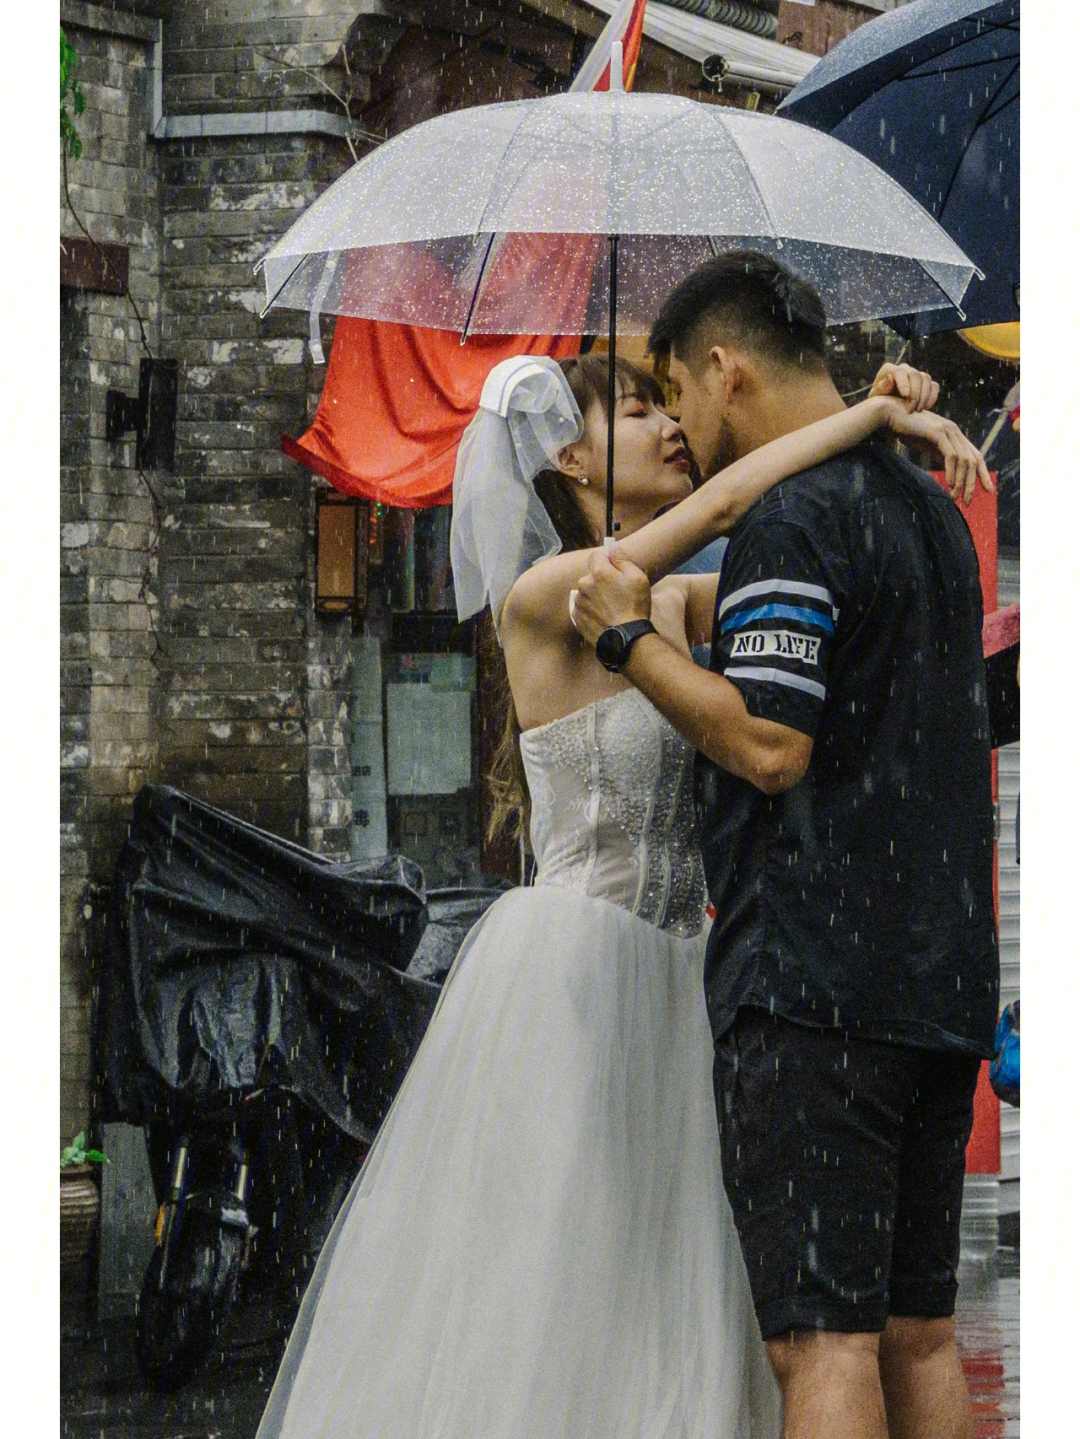 扫街遇到一对在雨中拍婚纱照的